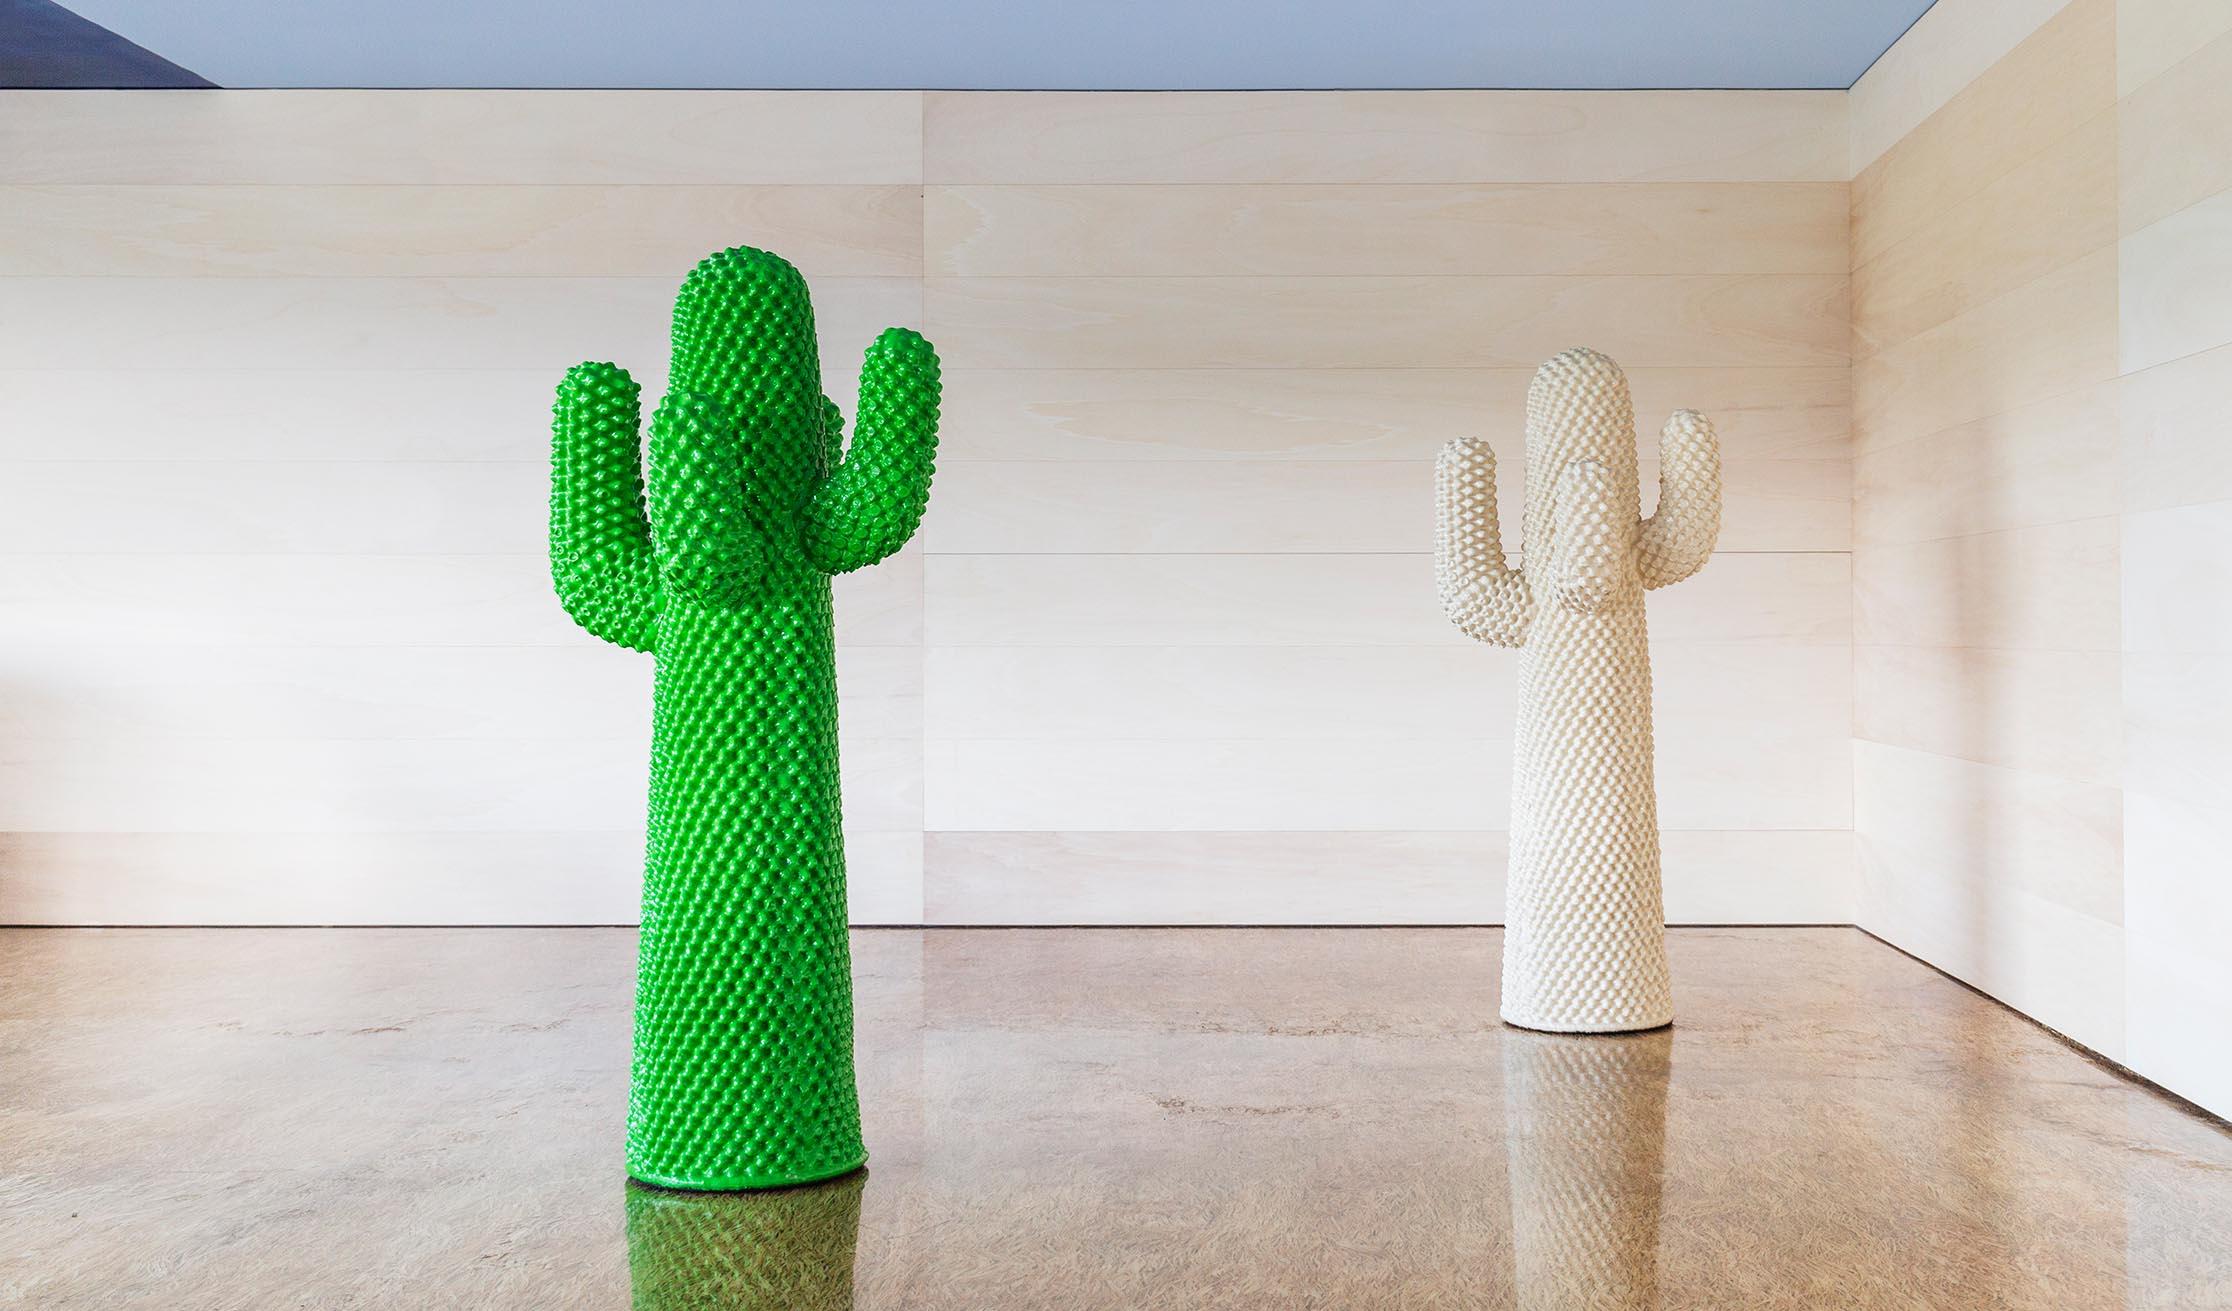 Der Kaktus, der Gegenstand zahlreicher freier und oft zweideutiger Interpretationen ist, ist eine Ikone des italienischen Designs, die die häusliche Landschaft revolutioniert hat, indem sie die Grenzen zwischen Innen- und Außenbereich aufhebt. Der